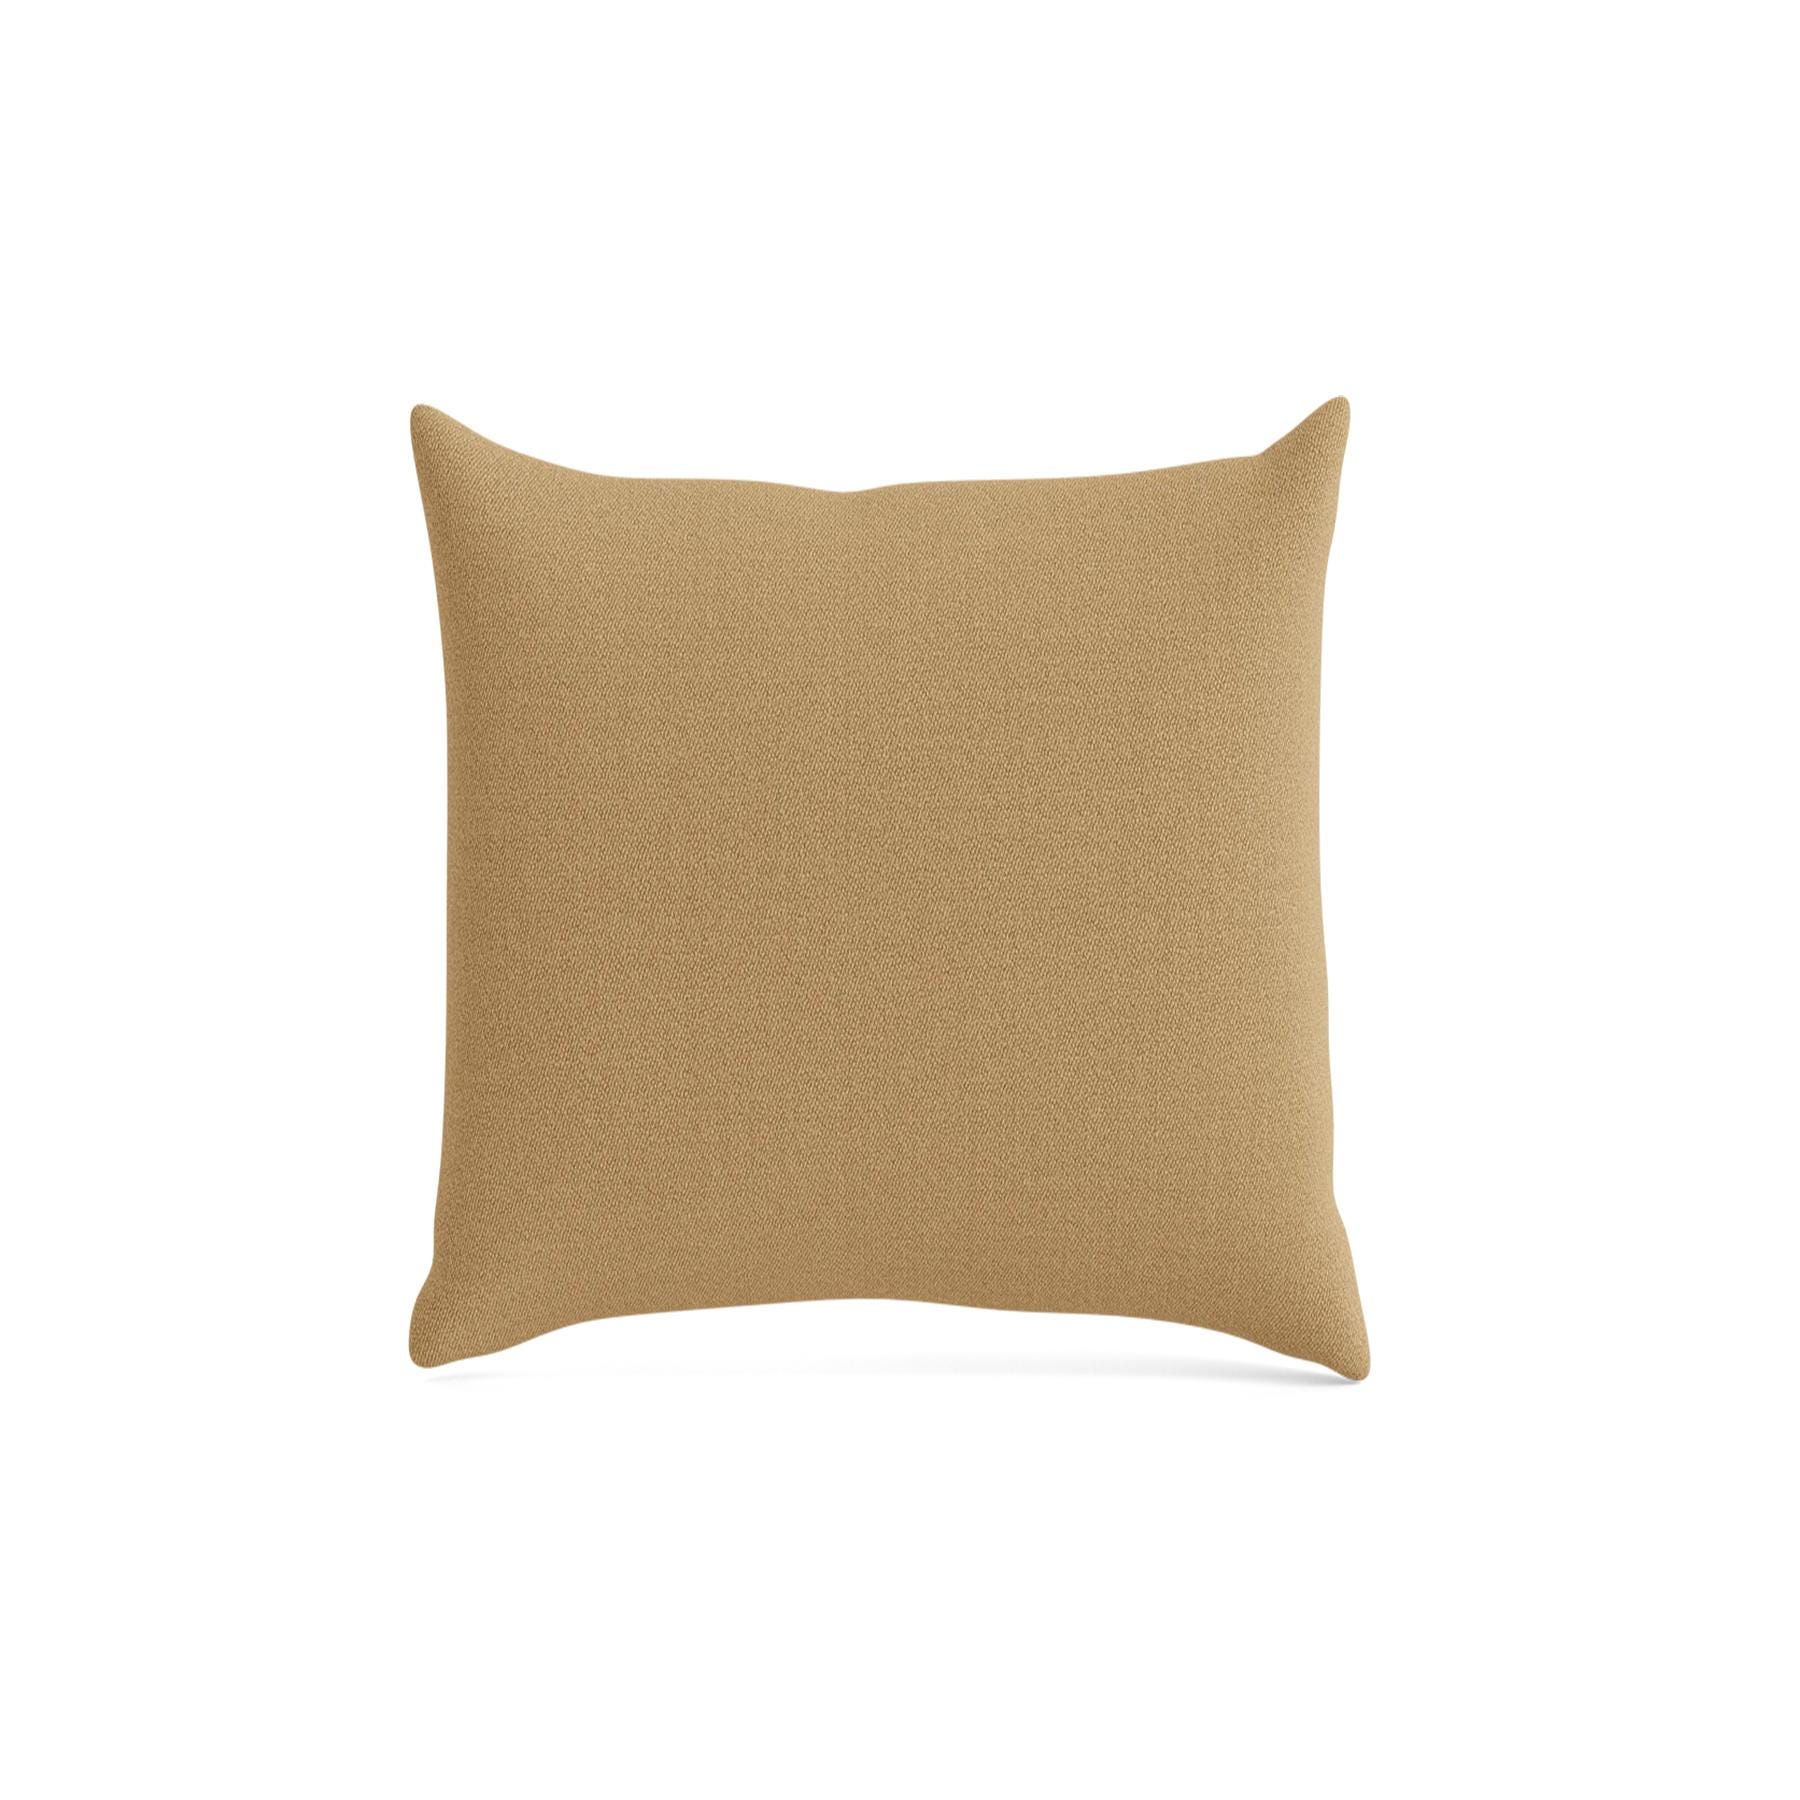 Make Nordic Pillow 40cmx40cm Vidar 333 Down And Fibers Brown